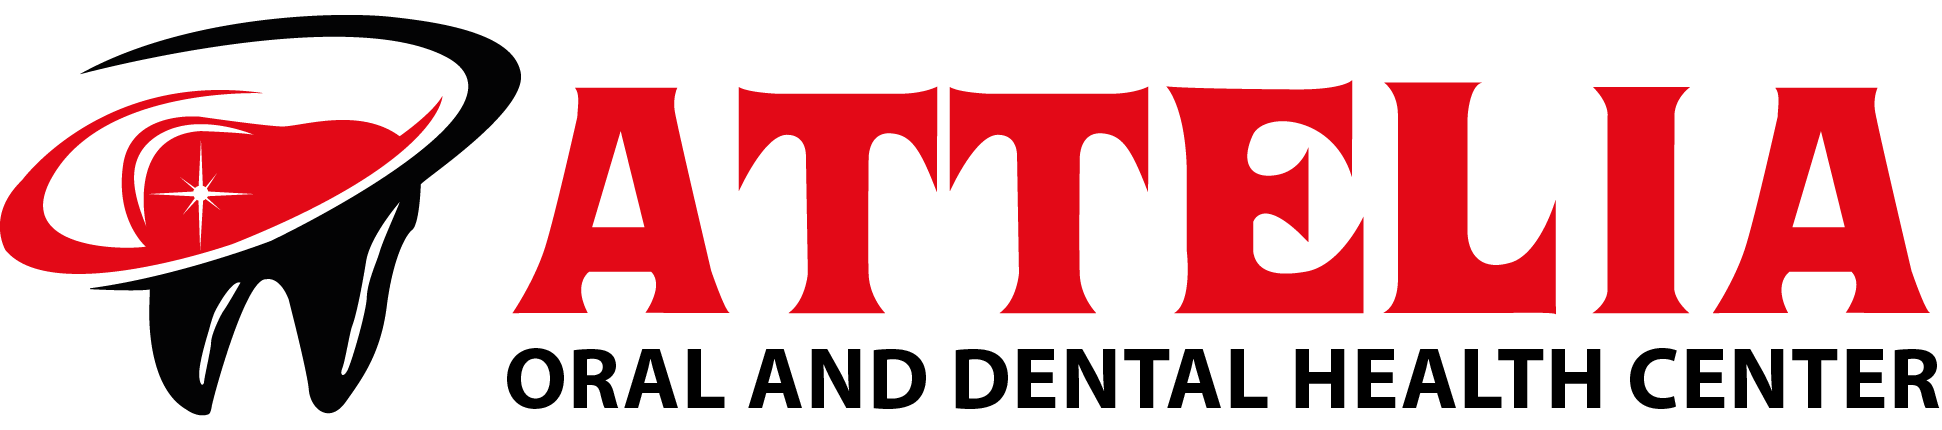 New Teeth - Turkey - Logo